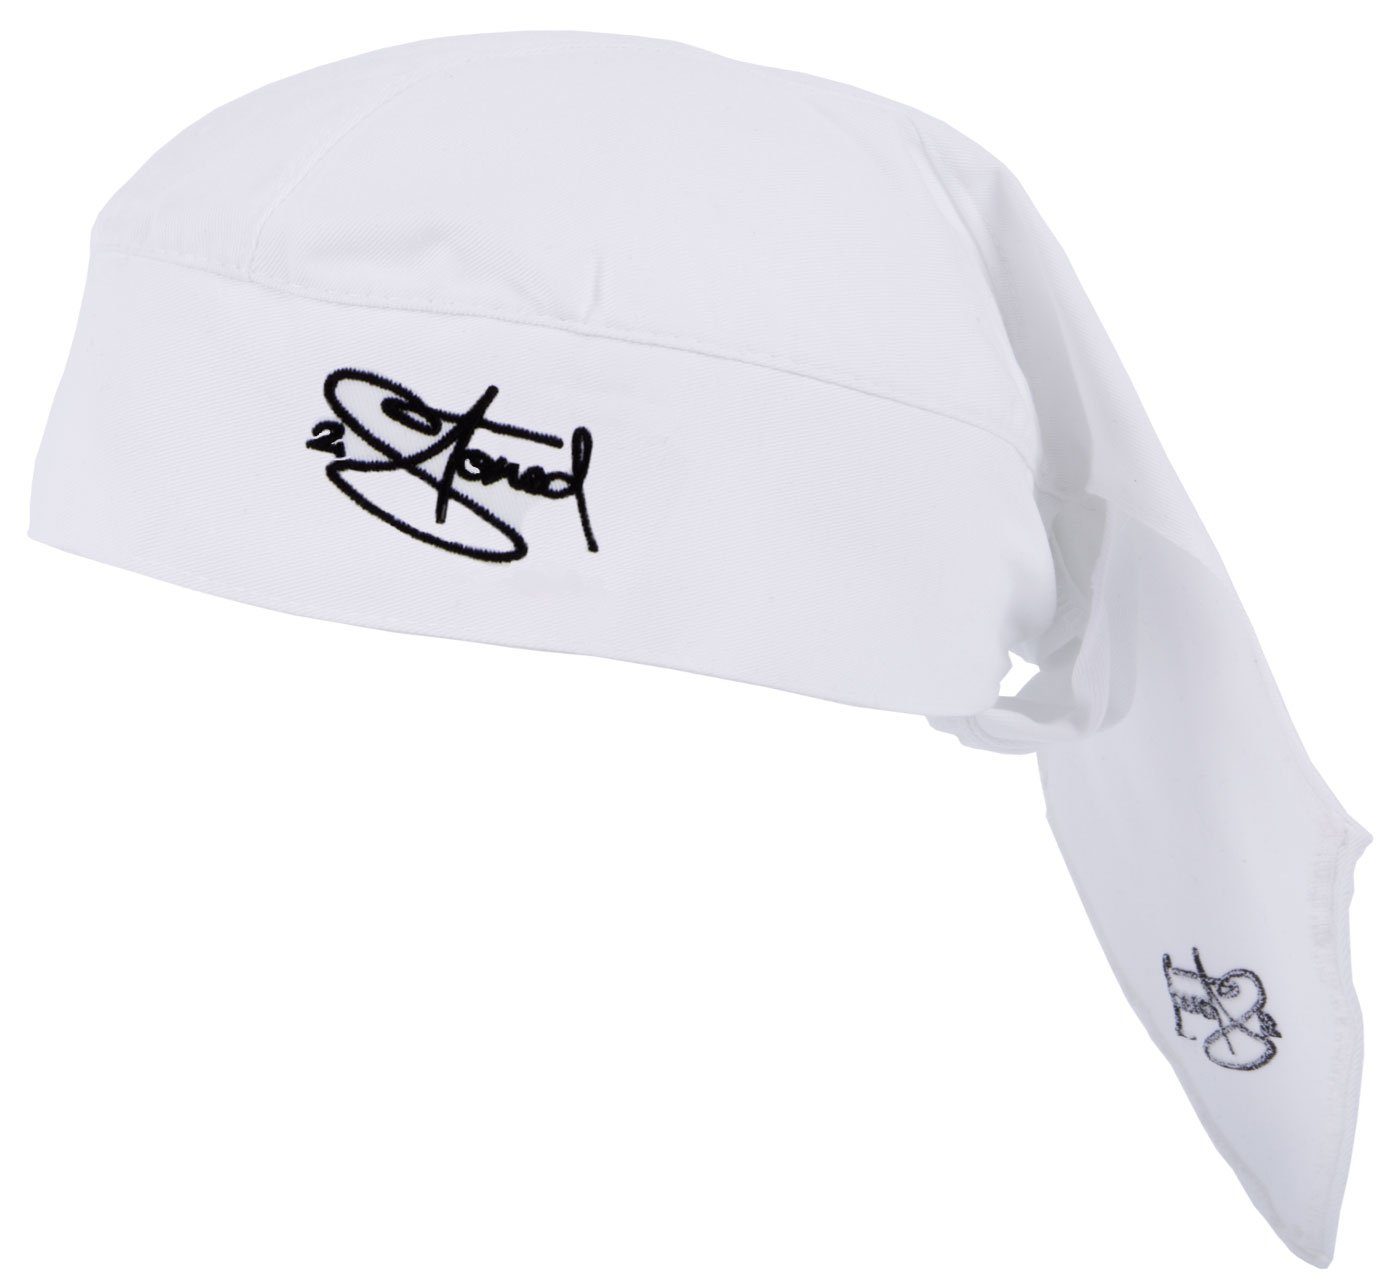 2Stoned Bandana Kopftuch Biker Cap Classic bestickt für Damen, Herren und Kinder, Einheitsgröße Weiß | Bandanas